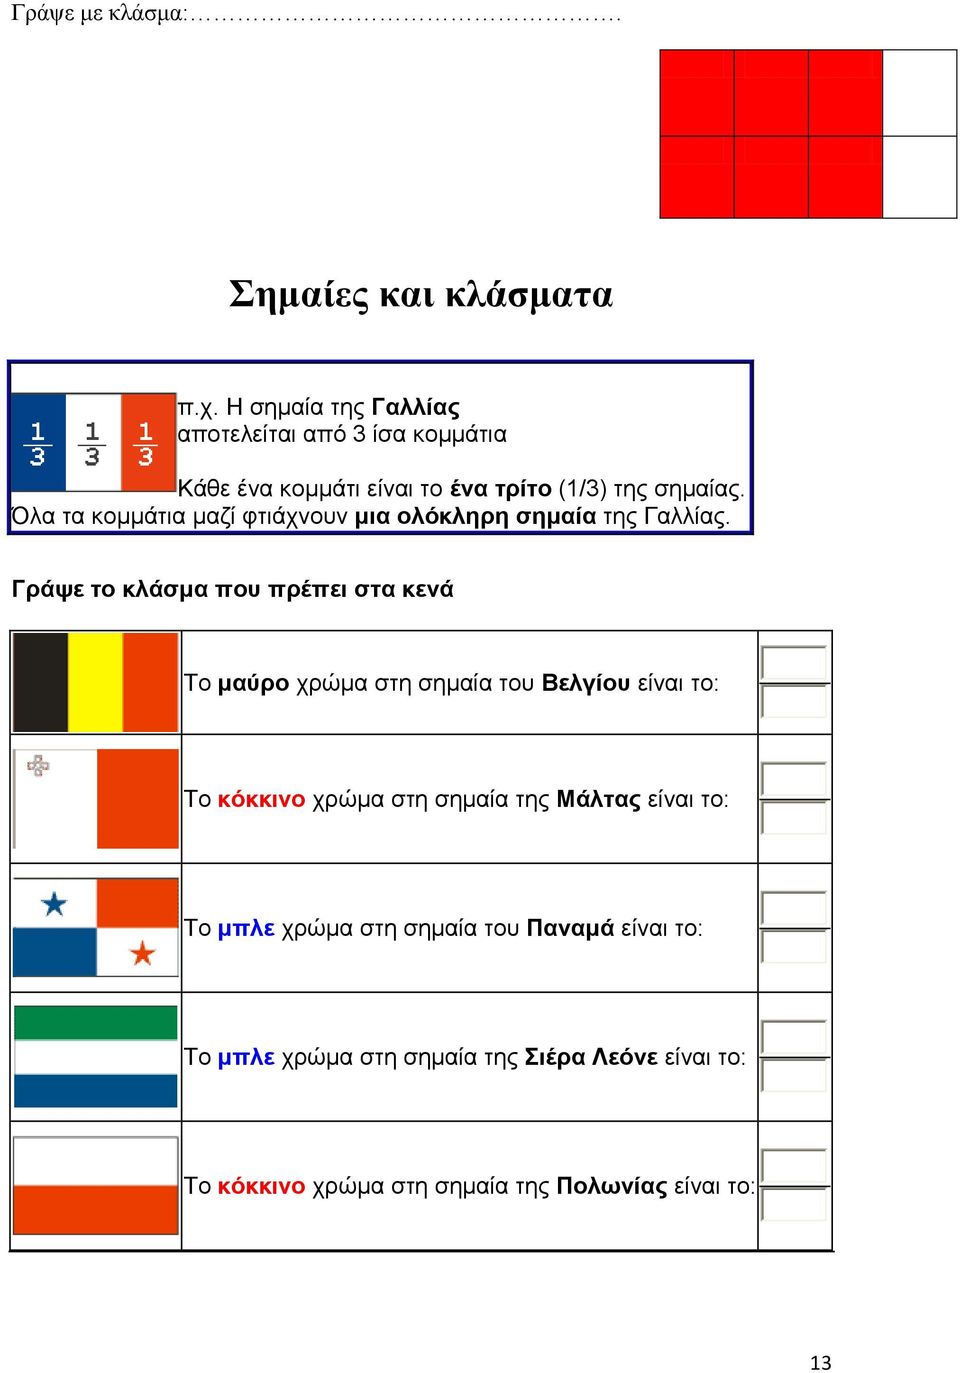 Όλα τα κομμάτια μαζί υτιάτνοσν μια ολόκληρη σημαία της Γαλλίας.